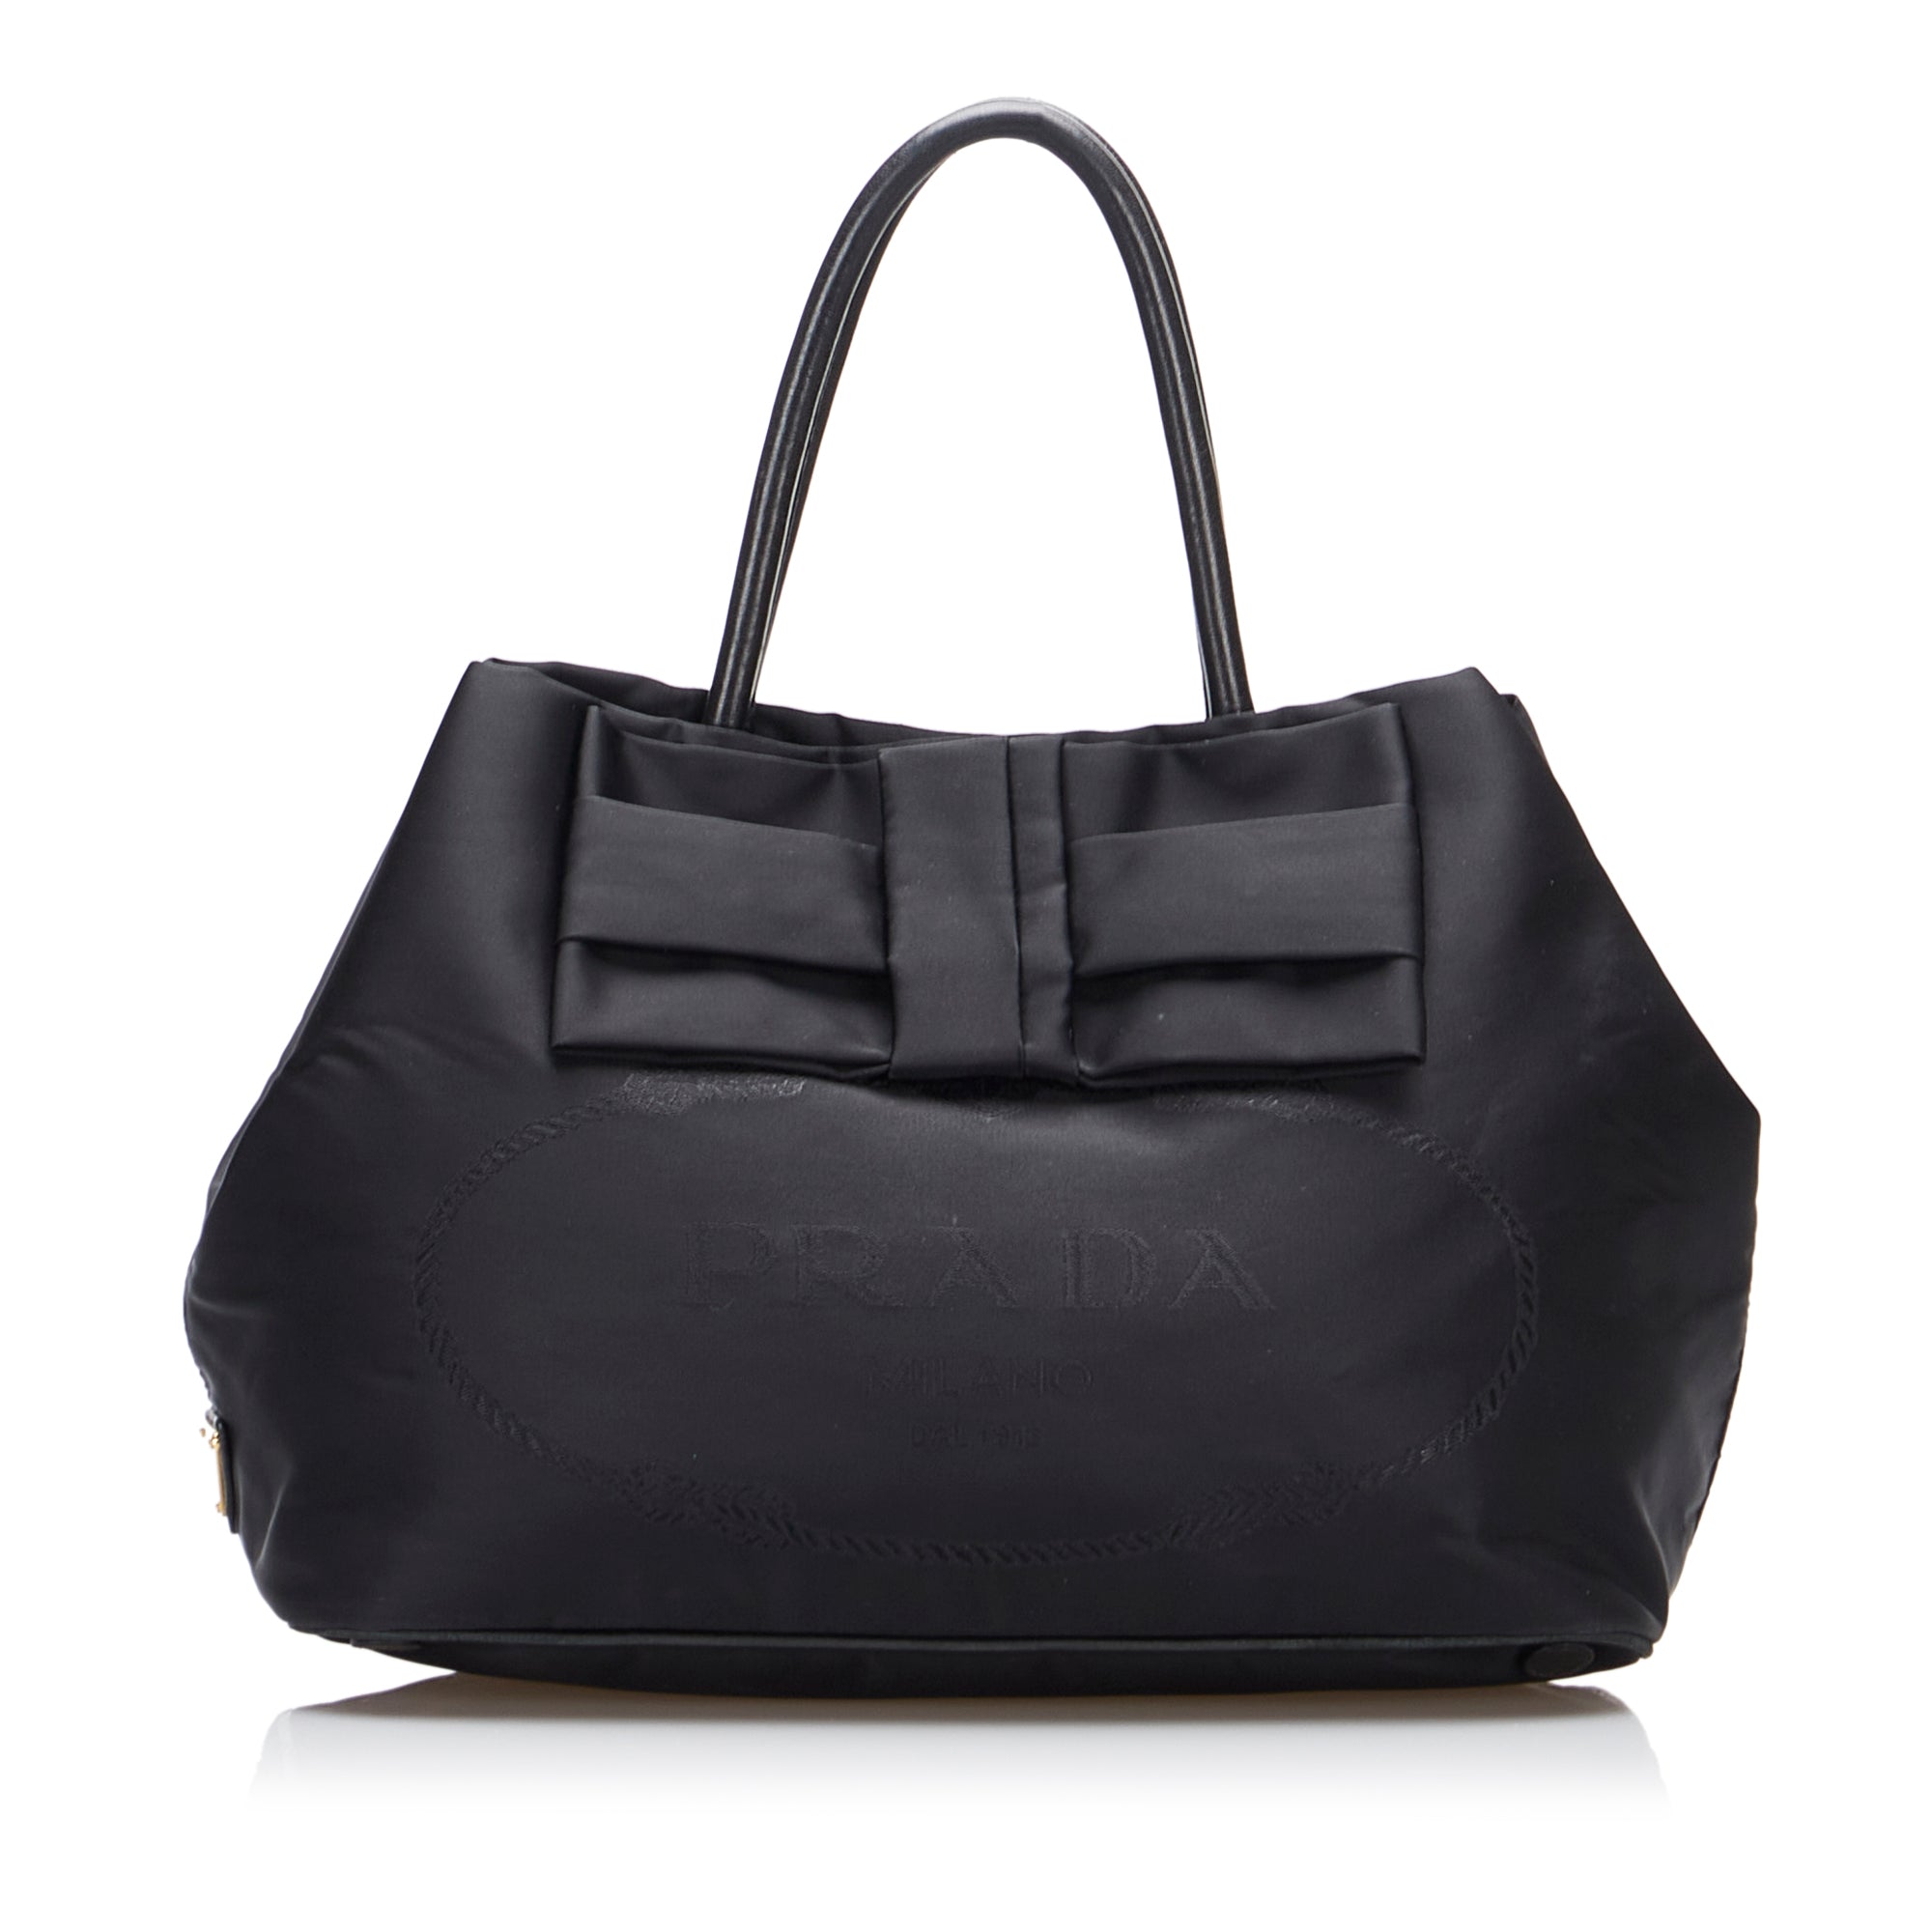 PRADA Canapa bag Tote Bag canvas With shoulder strap color black